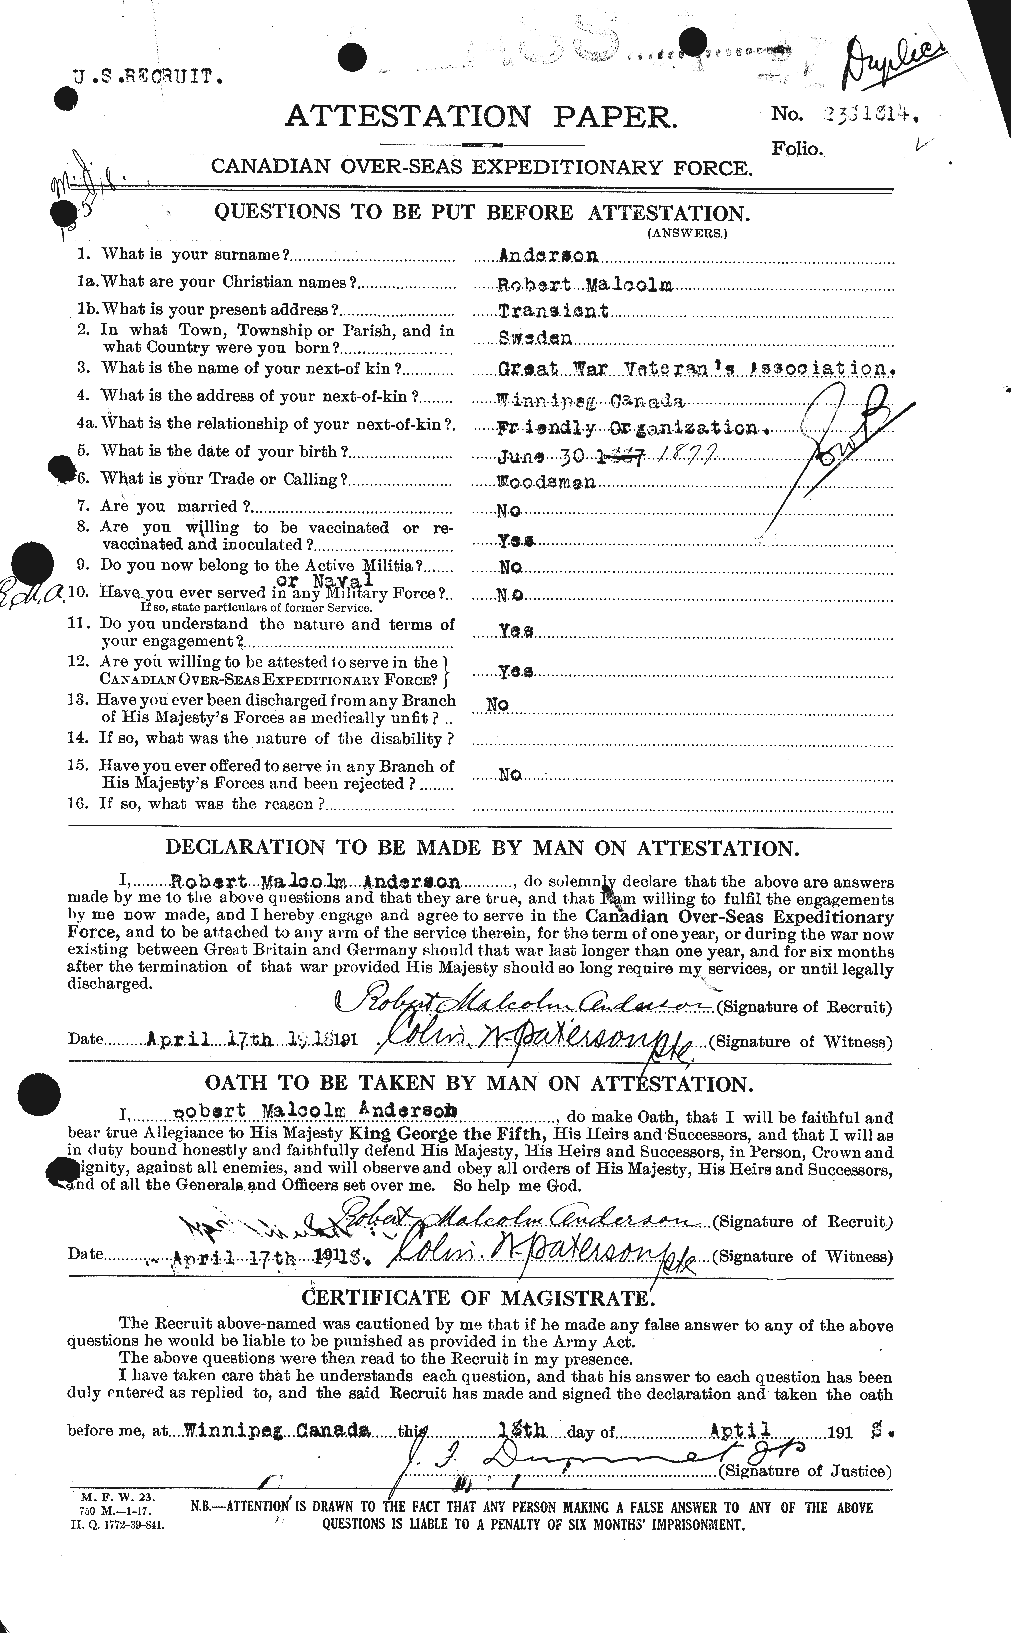 Dossiers du Personnel de la Première Guerre mondiale - CEC 207234a